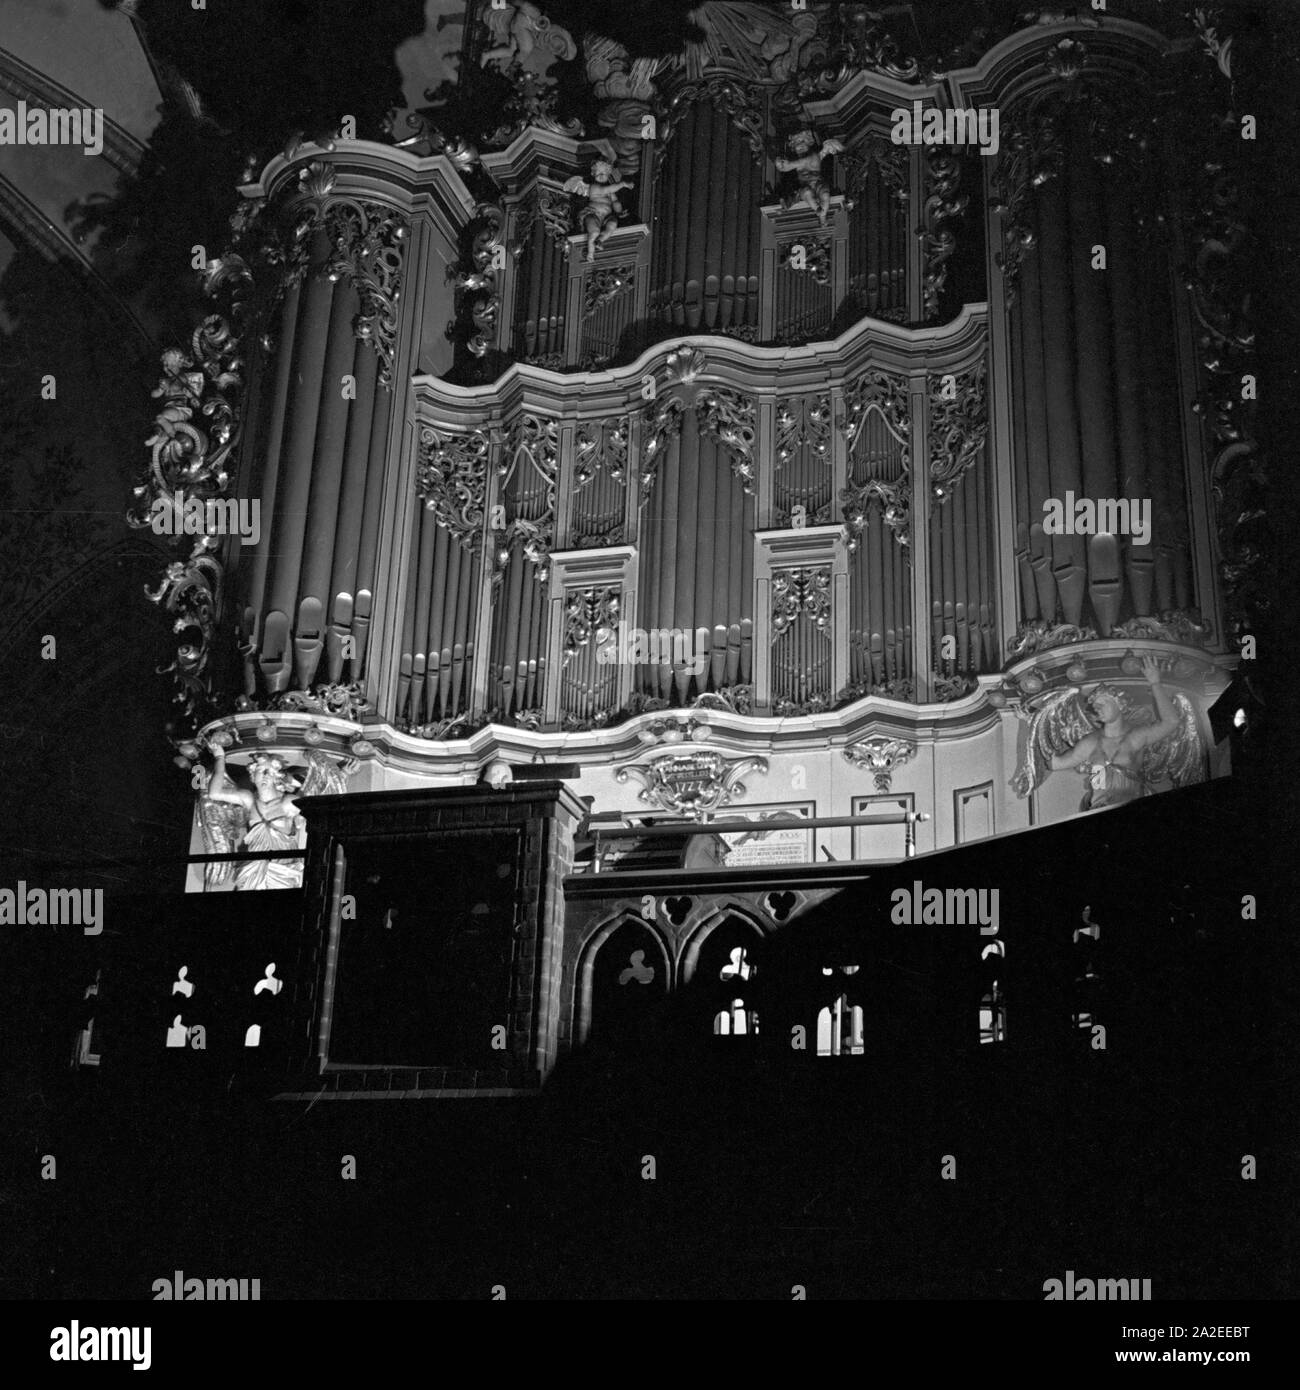 Die Orgel erklingt zum vorweihnachtlichen Adventskonzert in einer Kirche, Deutschland 1930er Jahr. L'organo giocando pre christmassy musica presso una chiesa in Germania, 1930s. Foto Stock